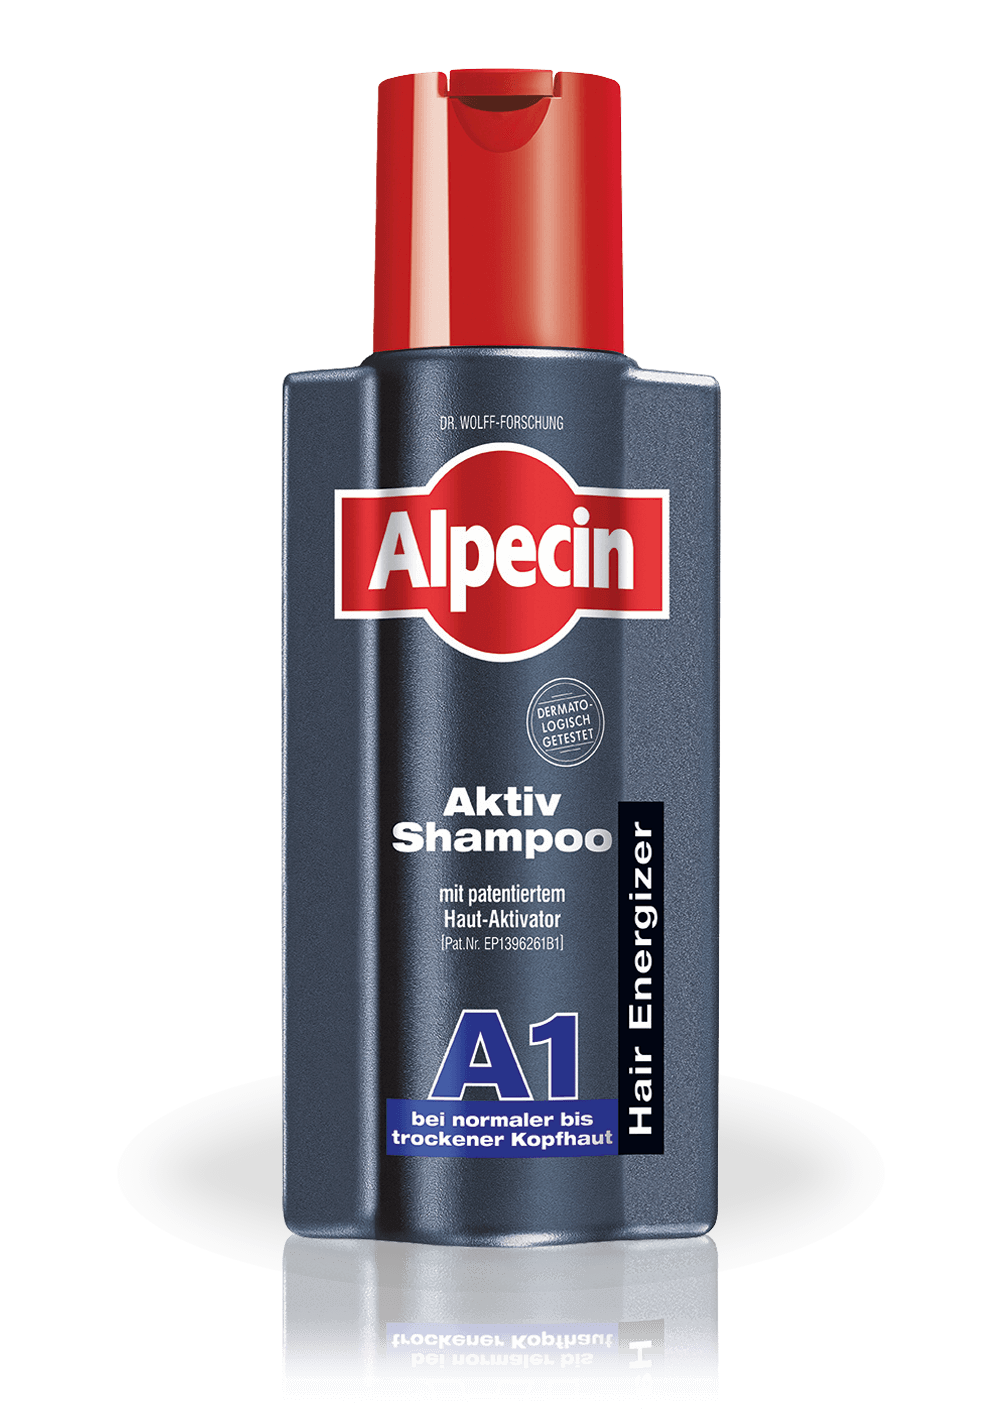 Alpecin active shampoo a2 for oily scalp 250 ml (n/a)